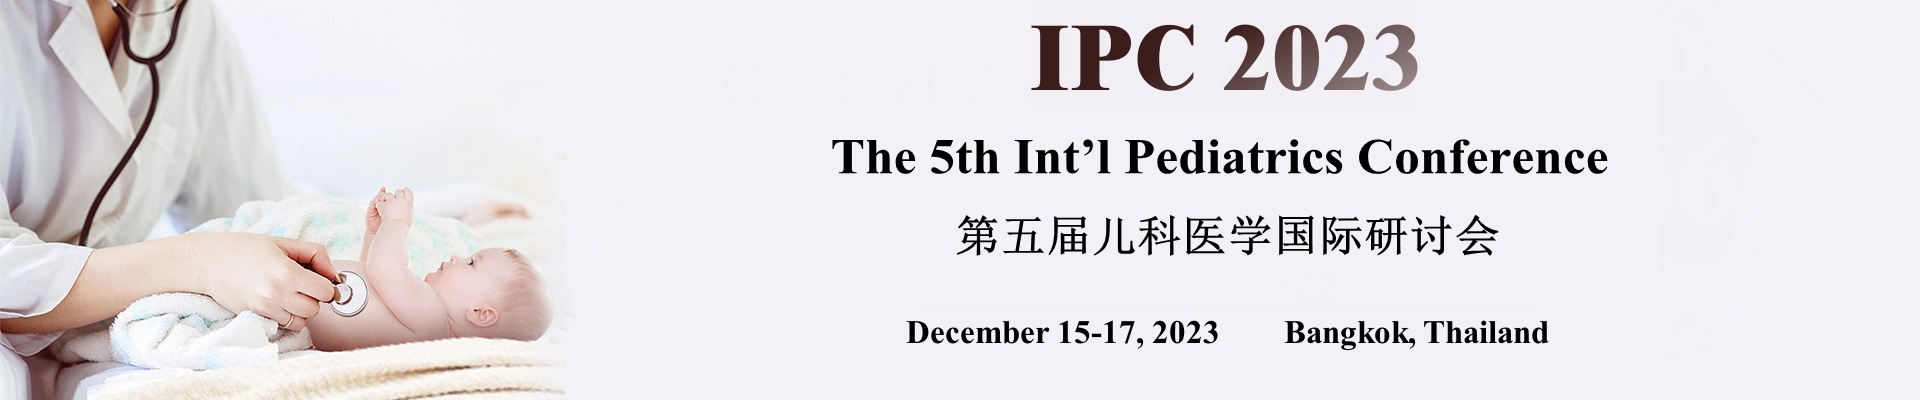 The 5th Int’l Pediatrics Conference (IPC 2023), Bangkok, Thailand,Bangkok,Thailand